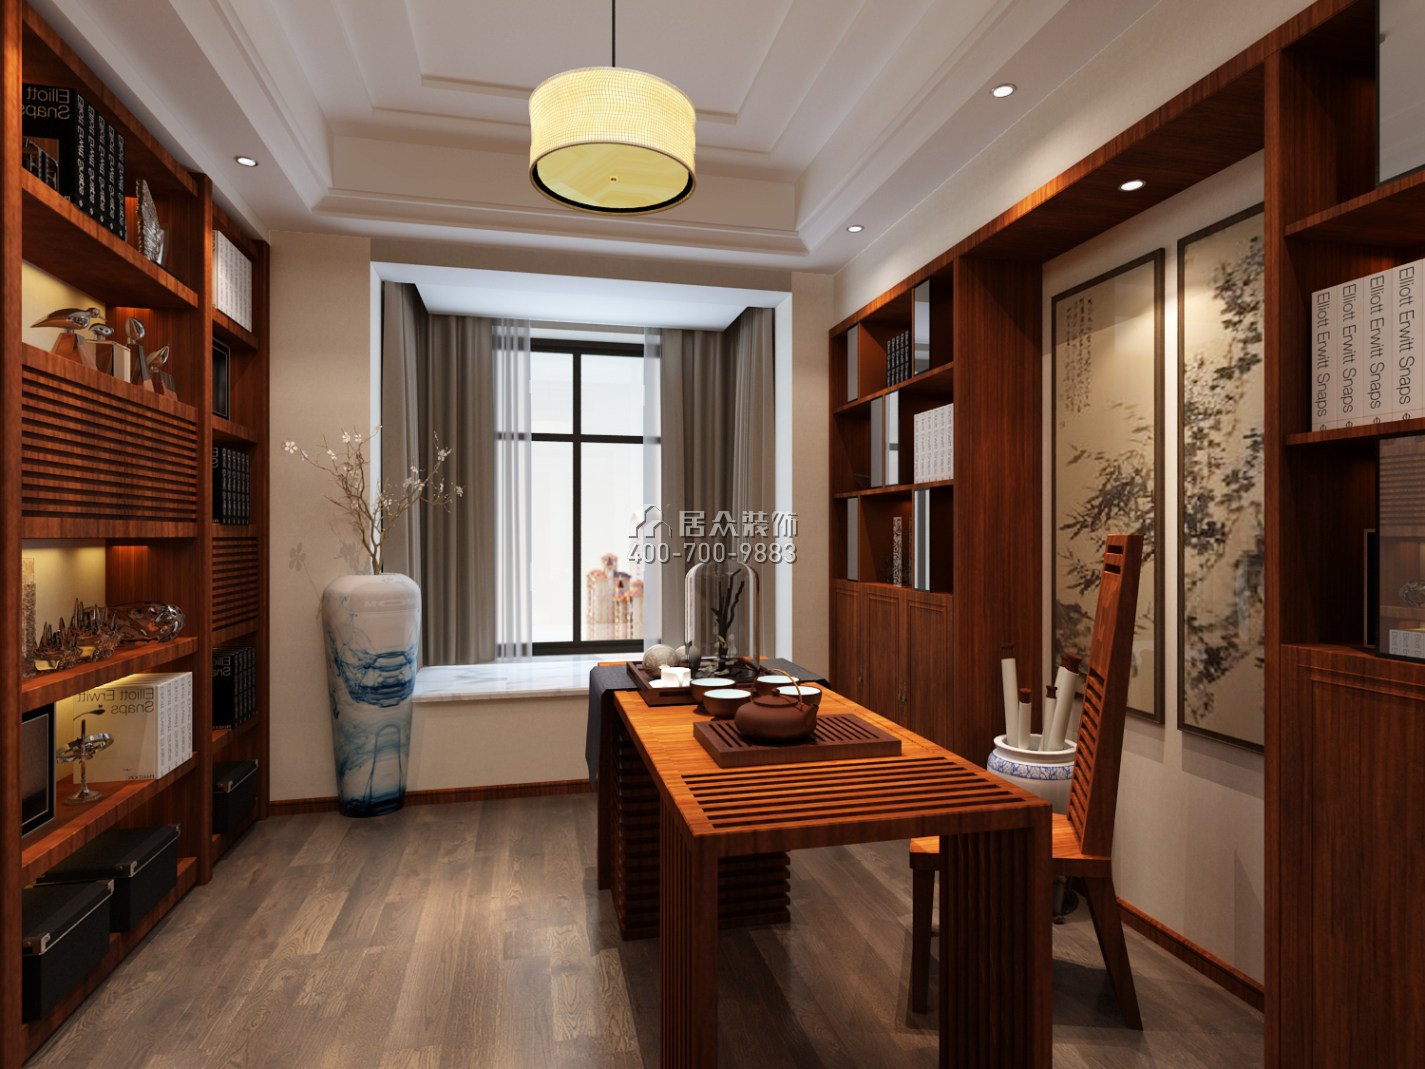 章誉苑171平方米中式风格平层户型茶室装修效果图